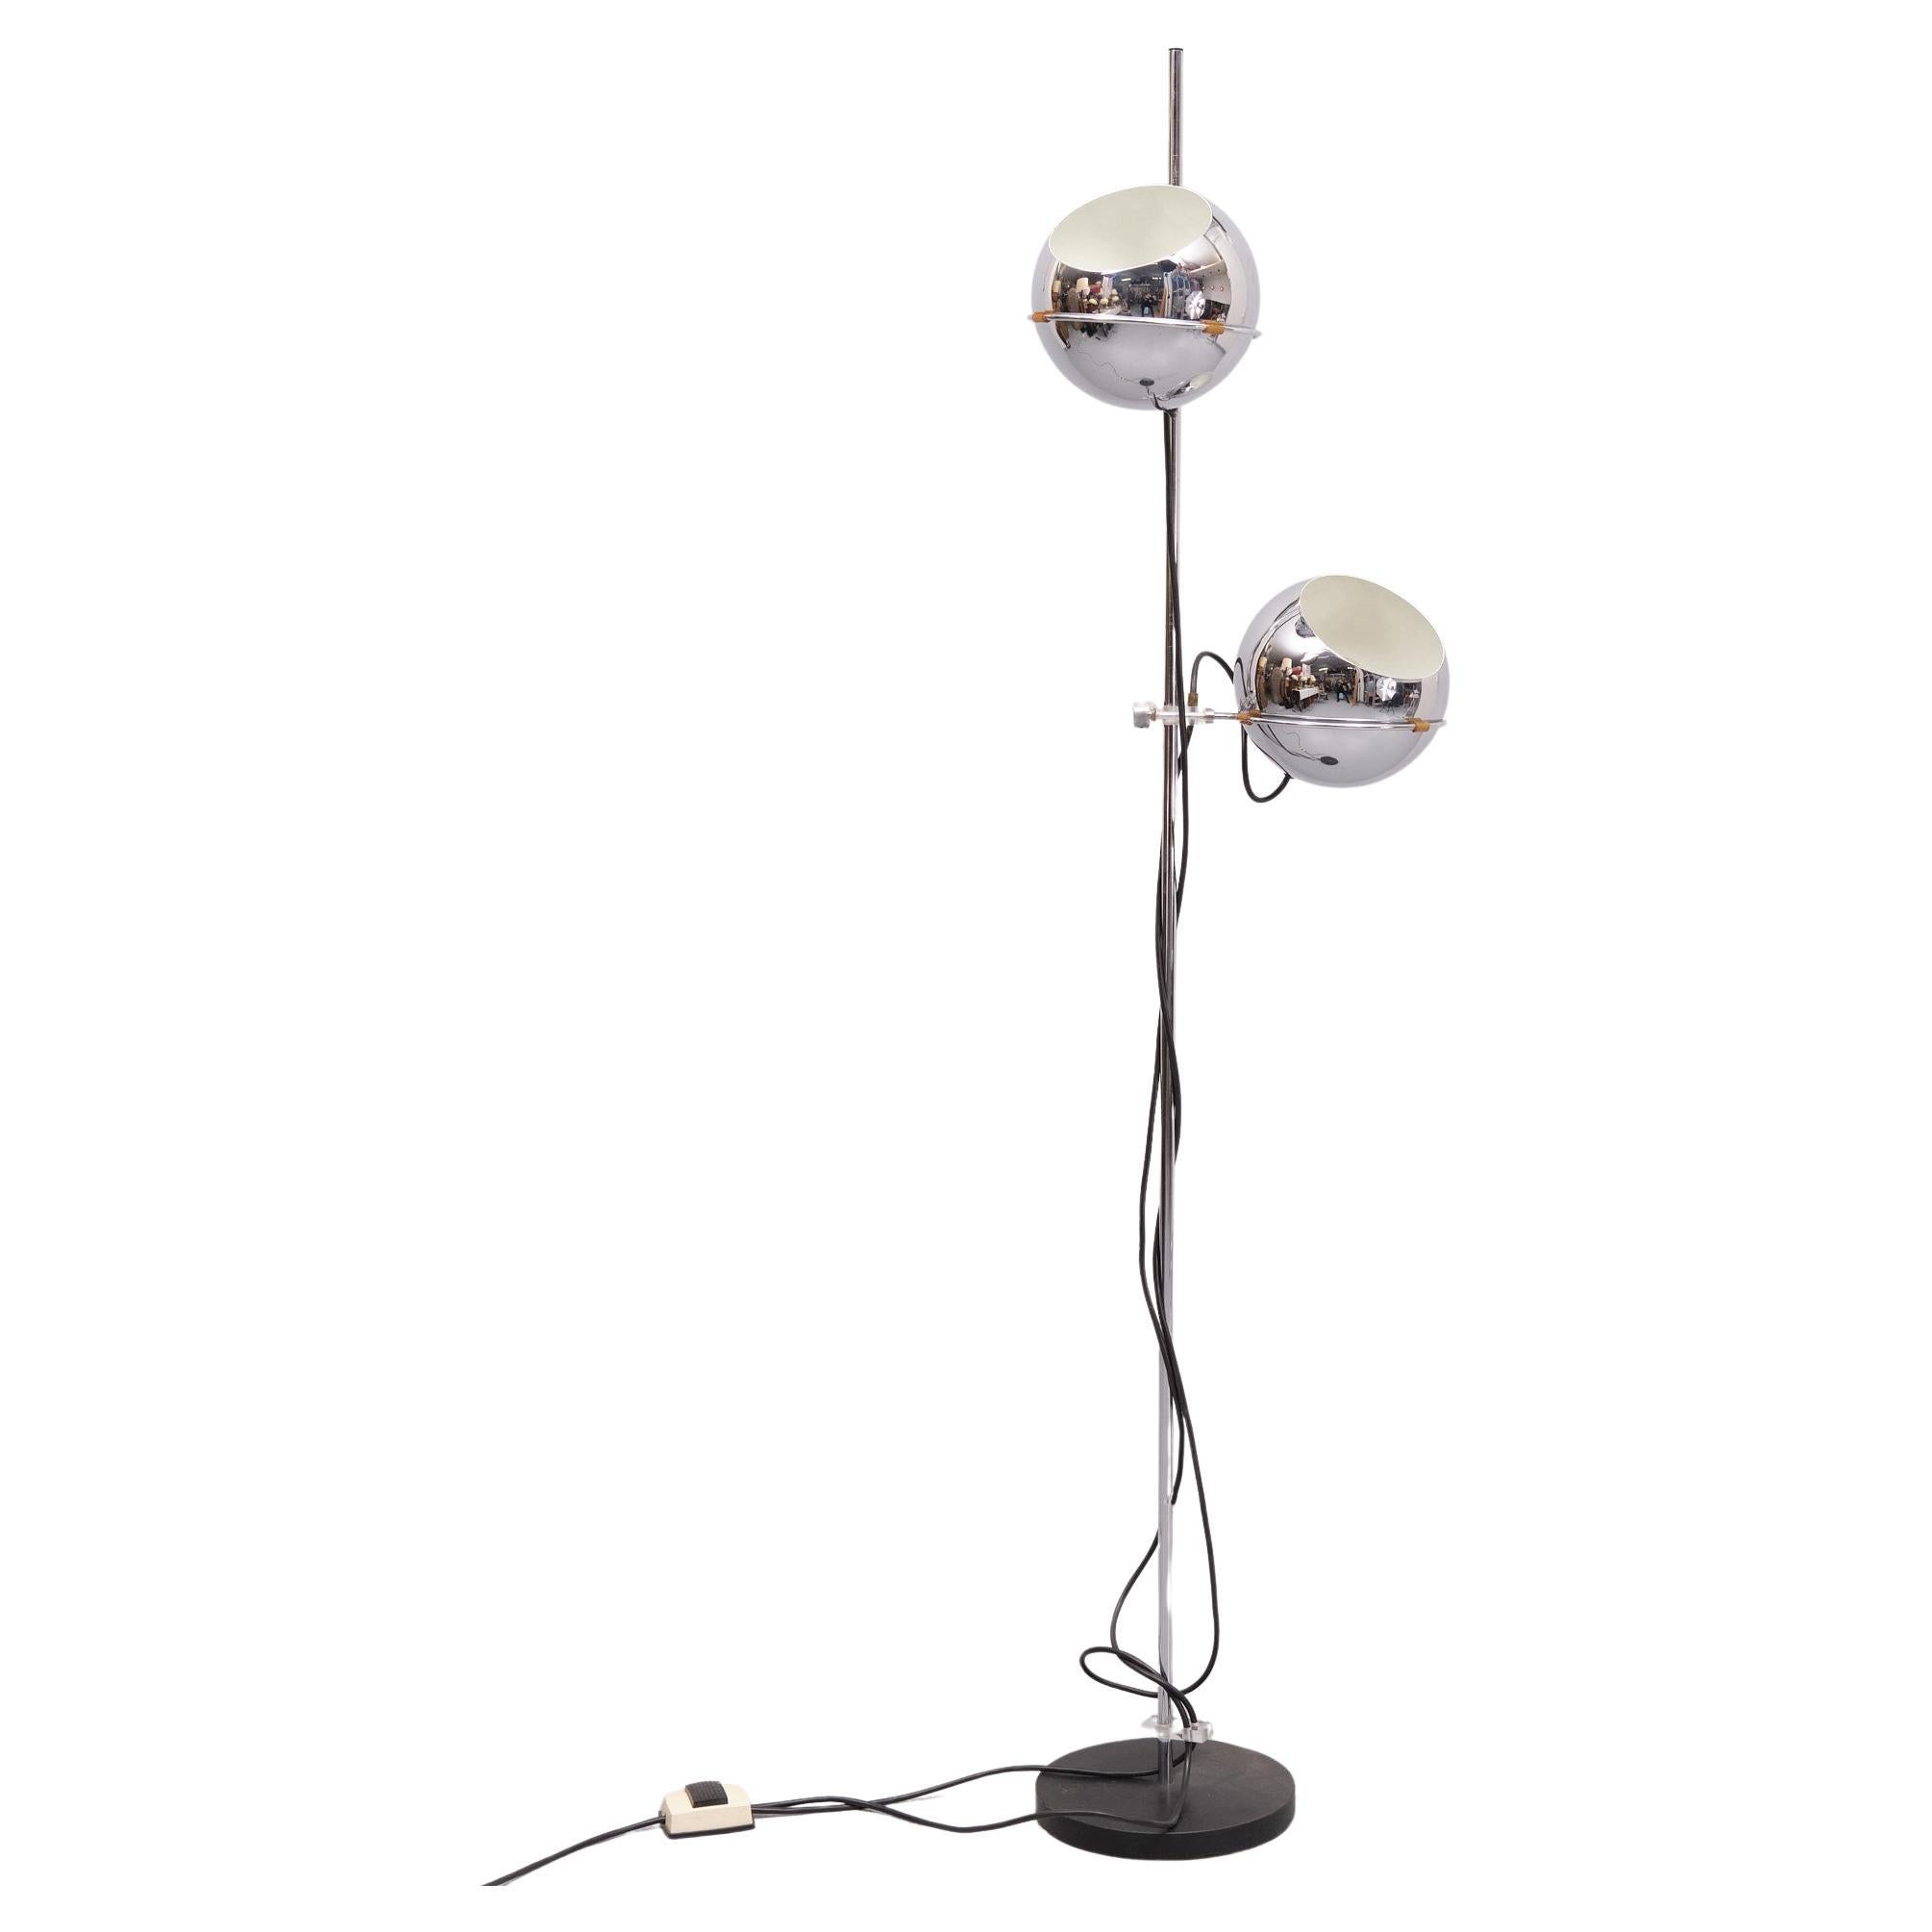 Lampadaire Gepo Chrome ; lampadaire des années 60 conçu par les frères Postuma pour la société néerlandaise Gepo. Les capuchons en forme de boule sont réglables en hauteur et peuvent être tournés vers le haut ou vers le bas pour un éclairage direct